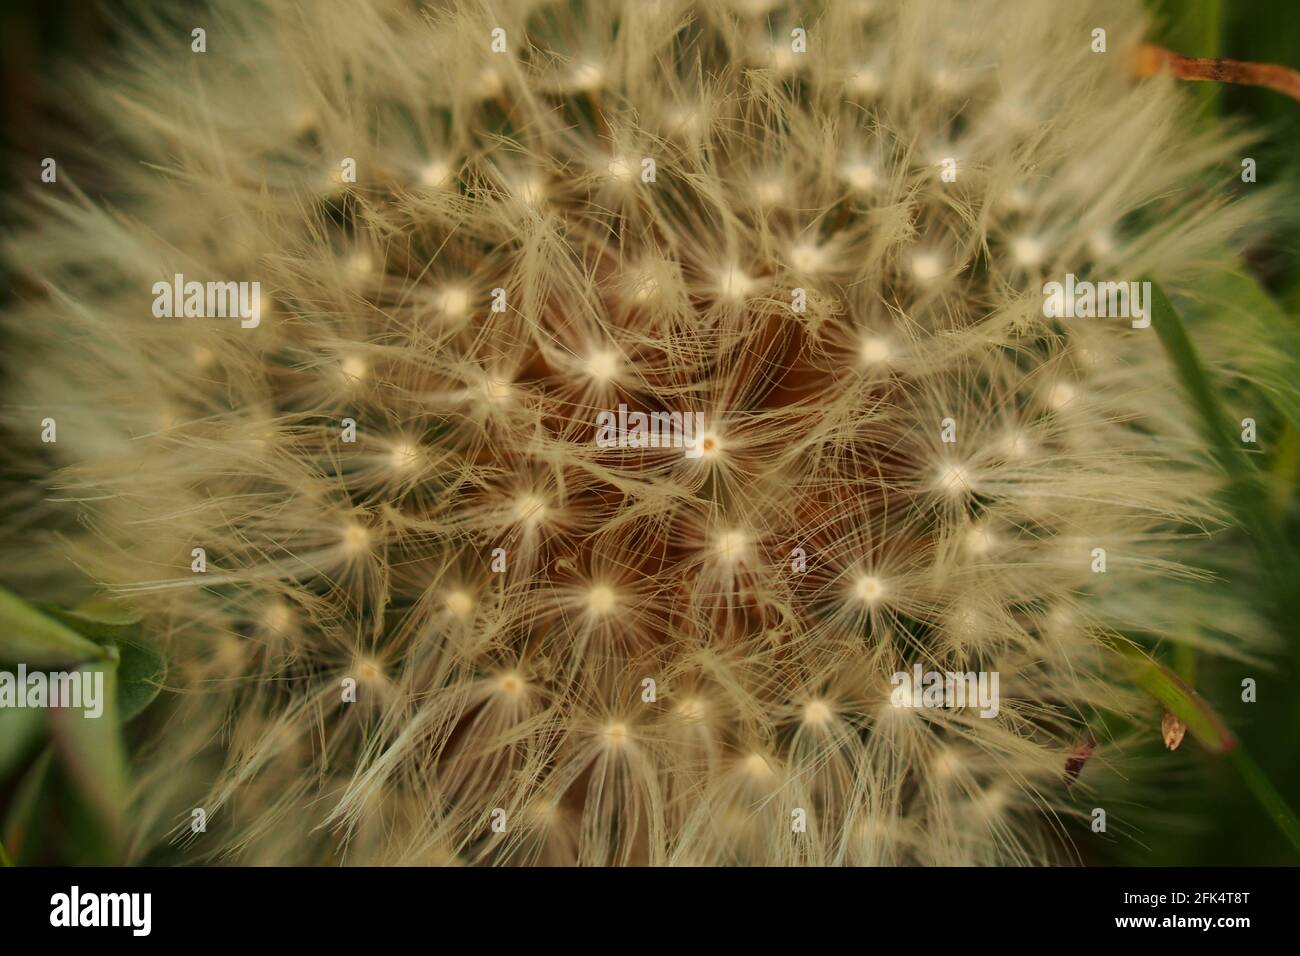 Une vue rapprochée d'une tête de semis de Dandelion dans une beauté délicate et complexe Banque D'Images